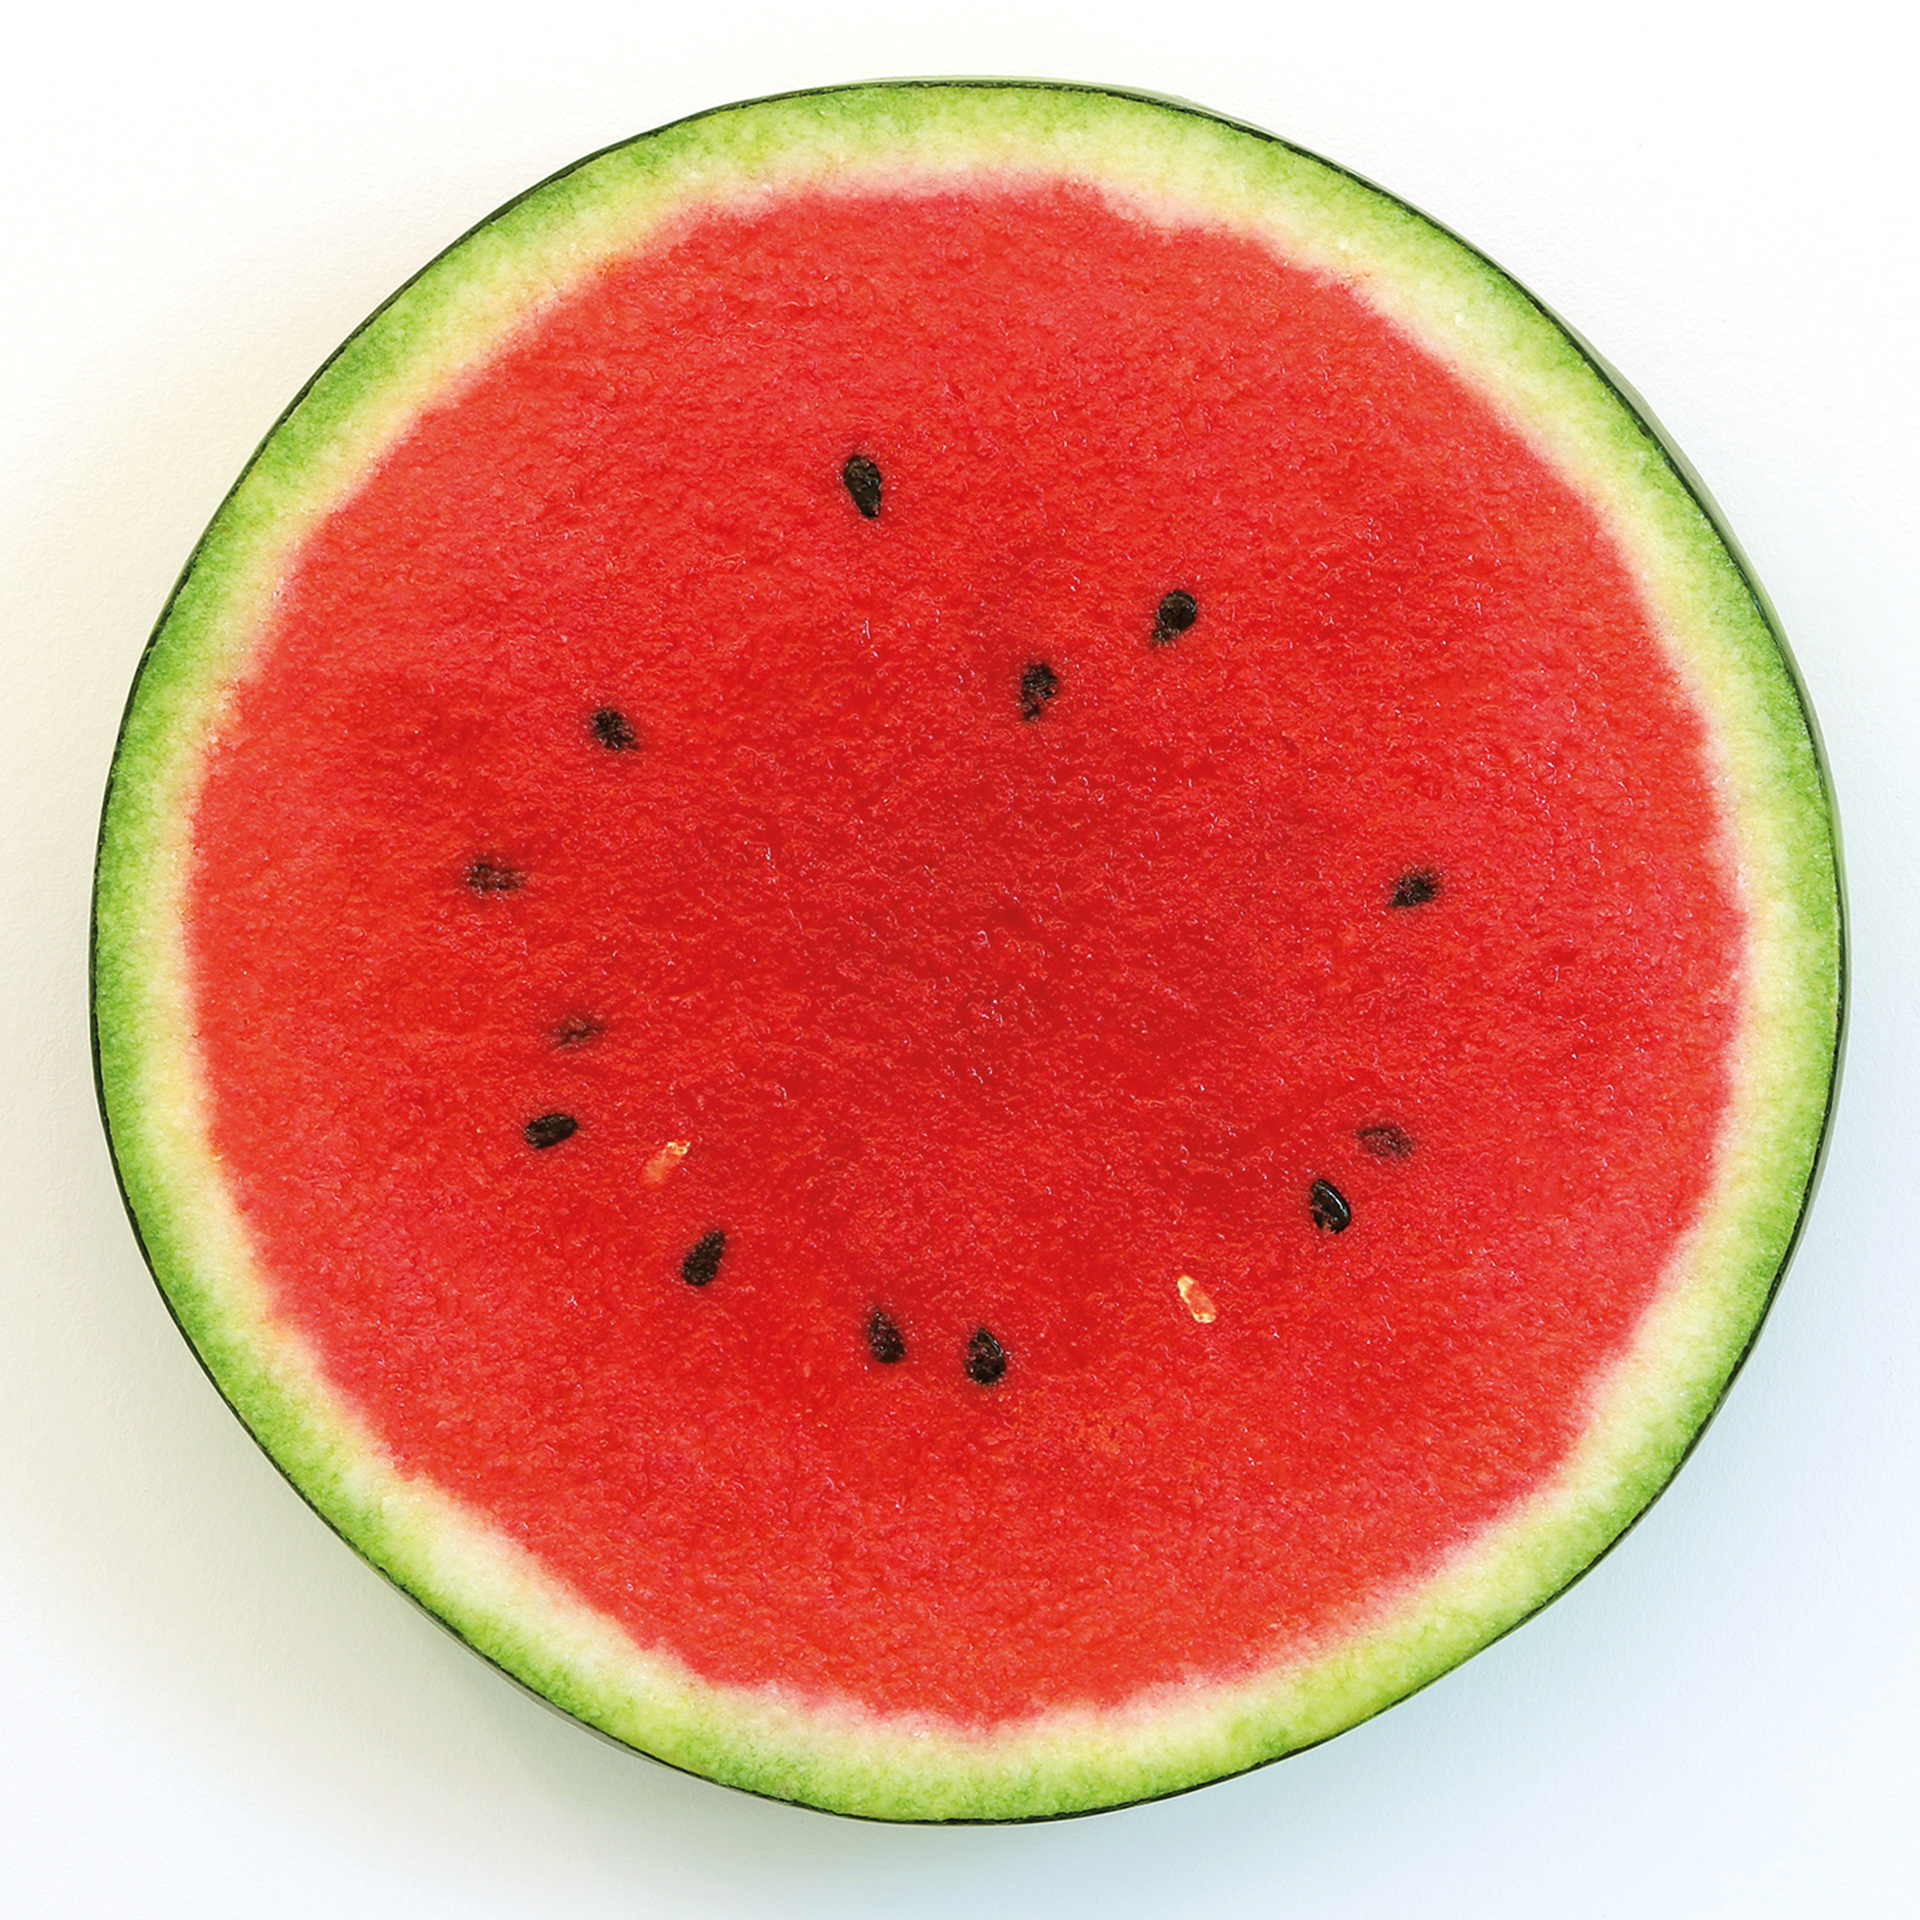 Abbildung von Peter Antons Werk slice of watermelon aus dem Jahr 2019.